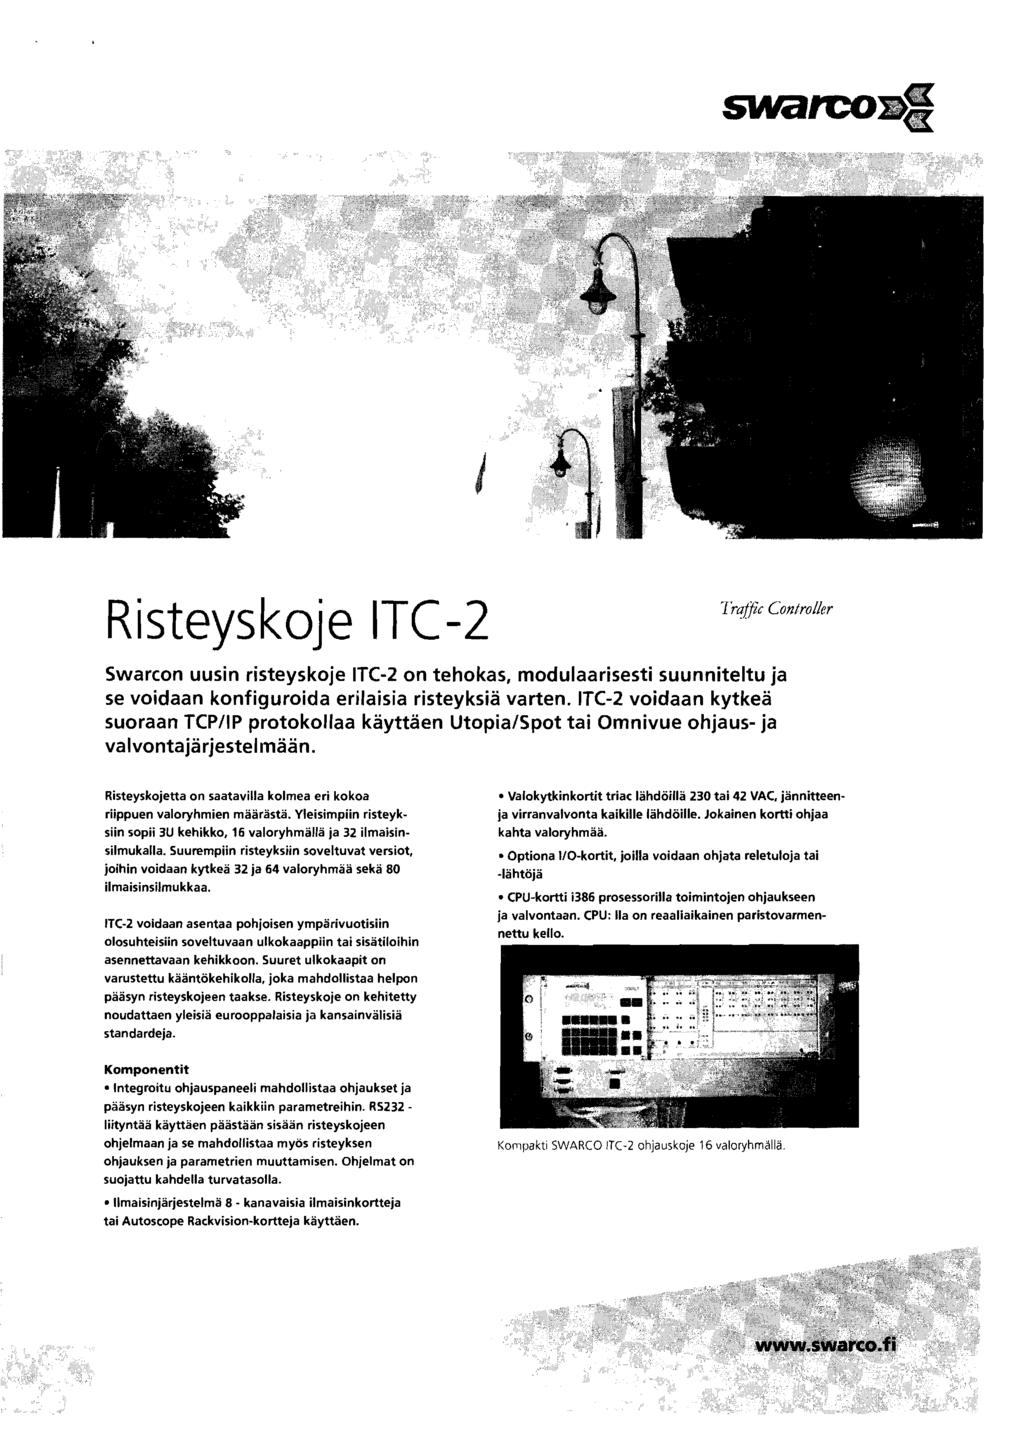 Risteyskoje ITe-2 Traffic Controller Swarcon uusin risteyskoje ITC-2 on tehokas, modulaarisesti suunniteltu ja se voidaan konfiguroida erilaisia risteyksla varten.